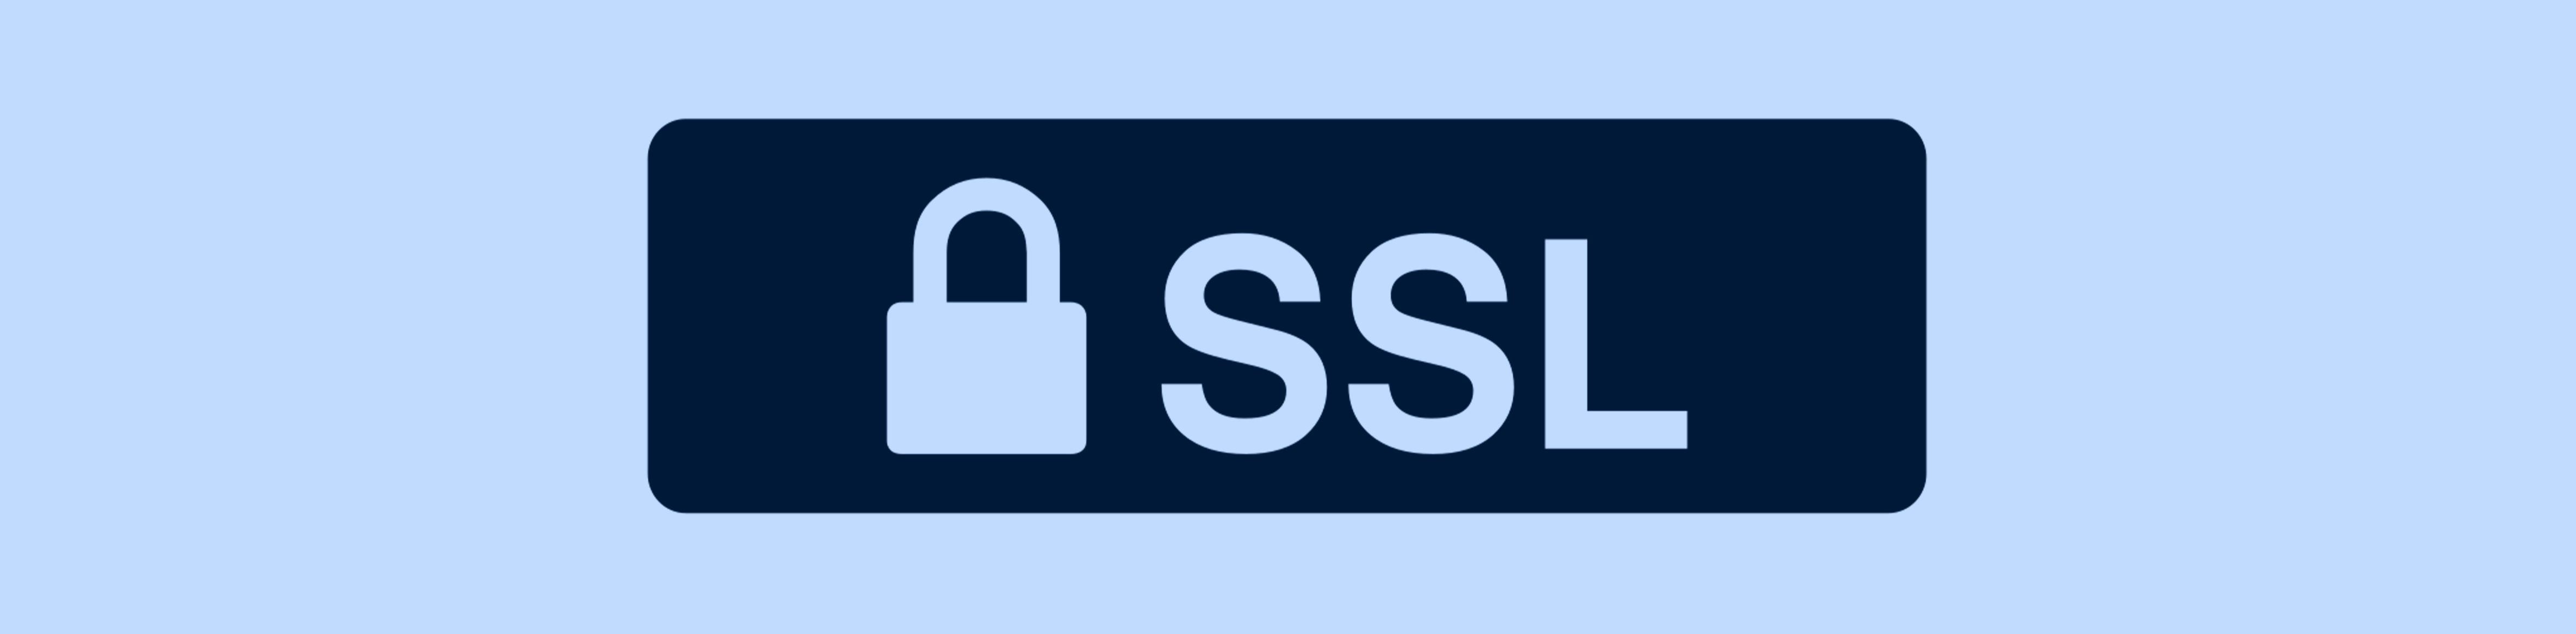 Certificato SSL protegge il sito web